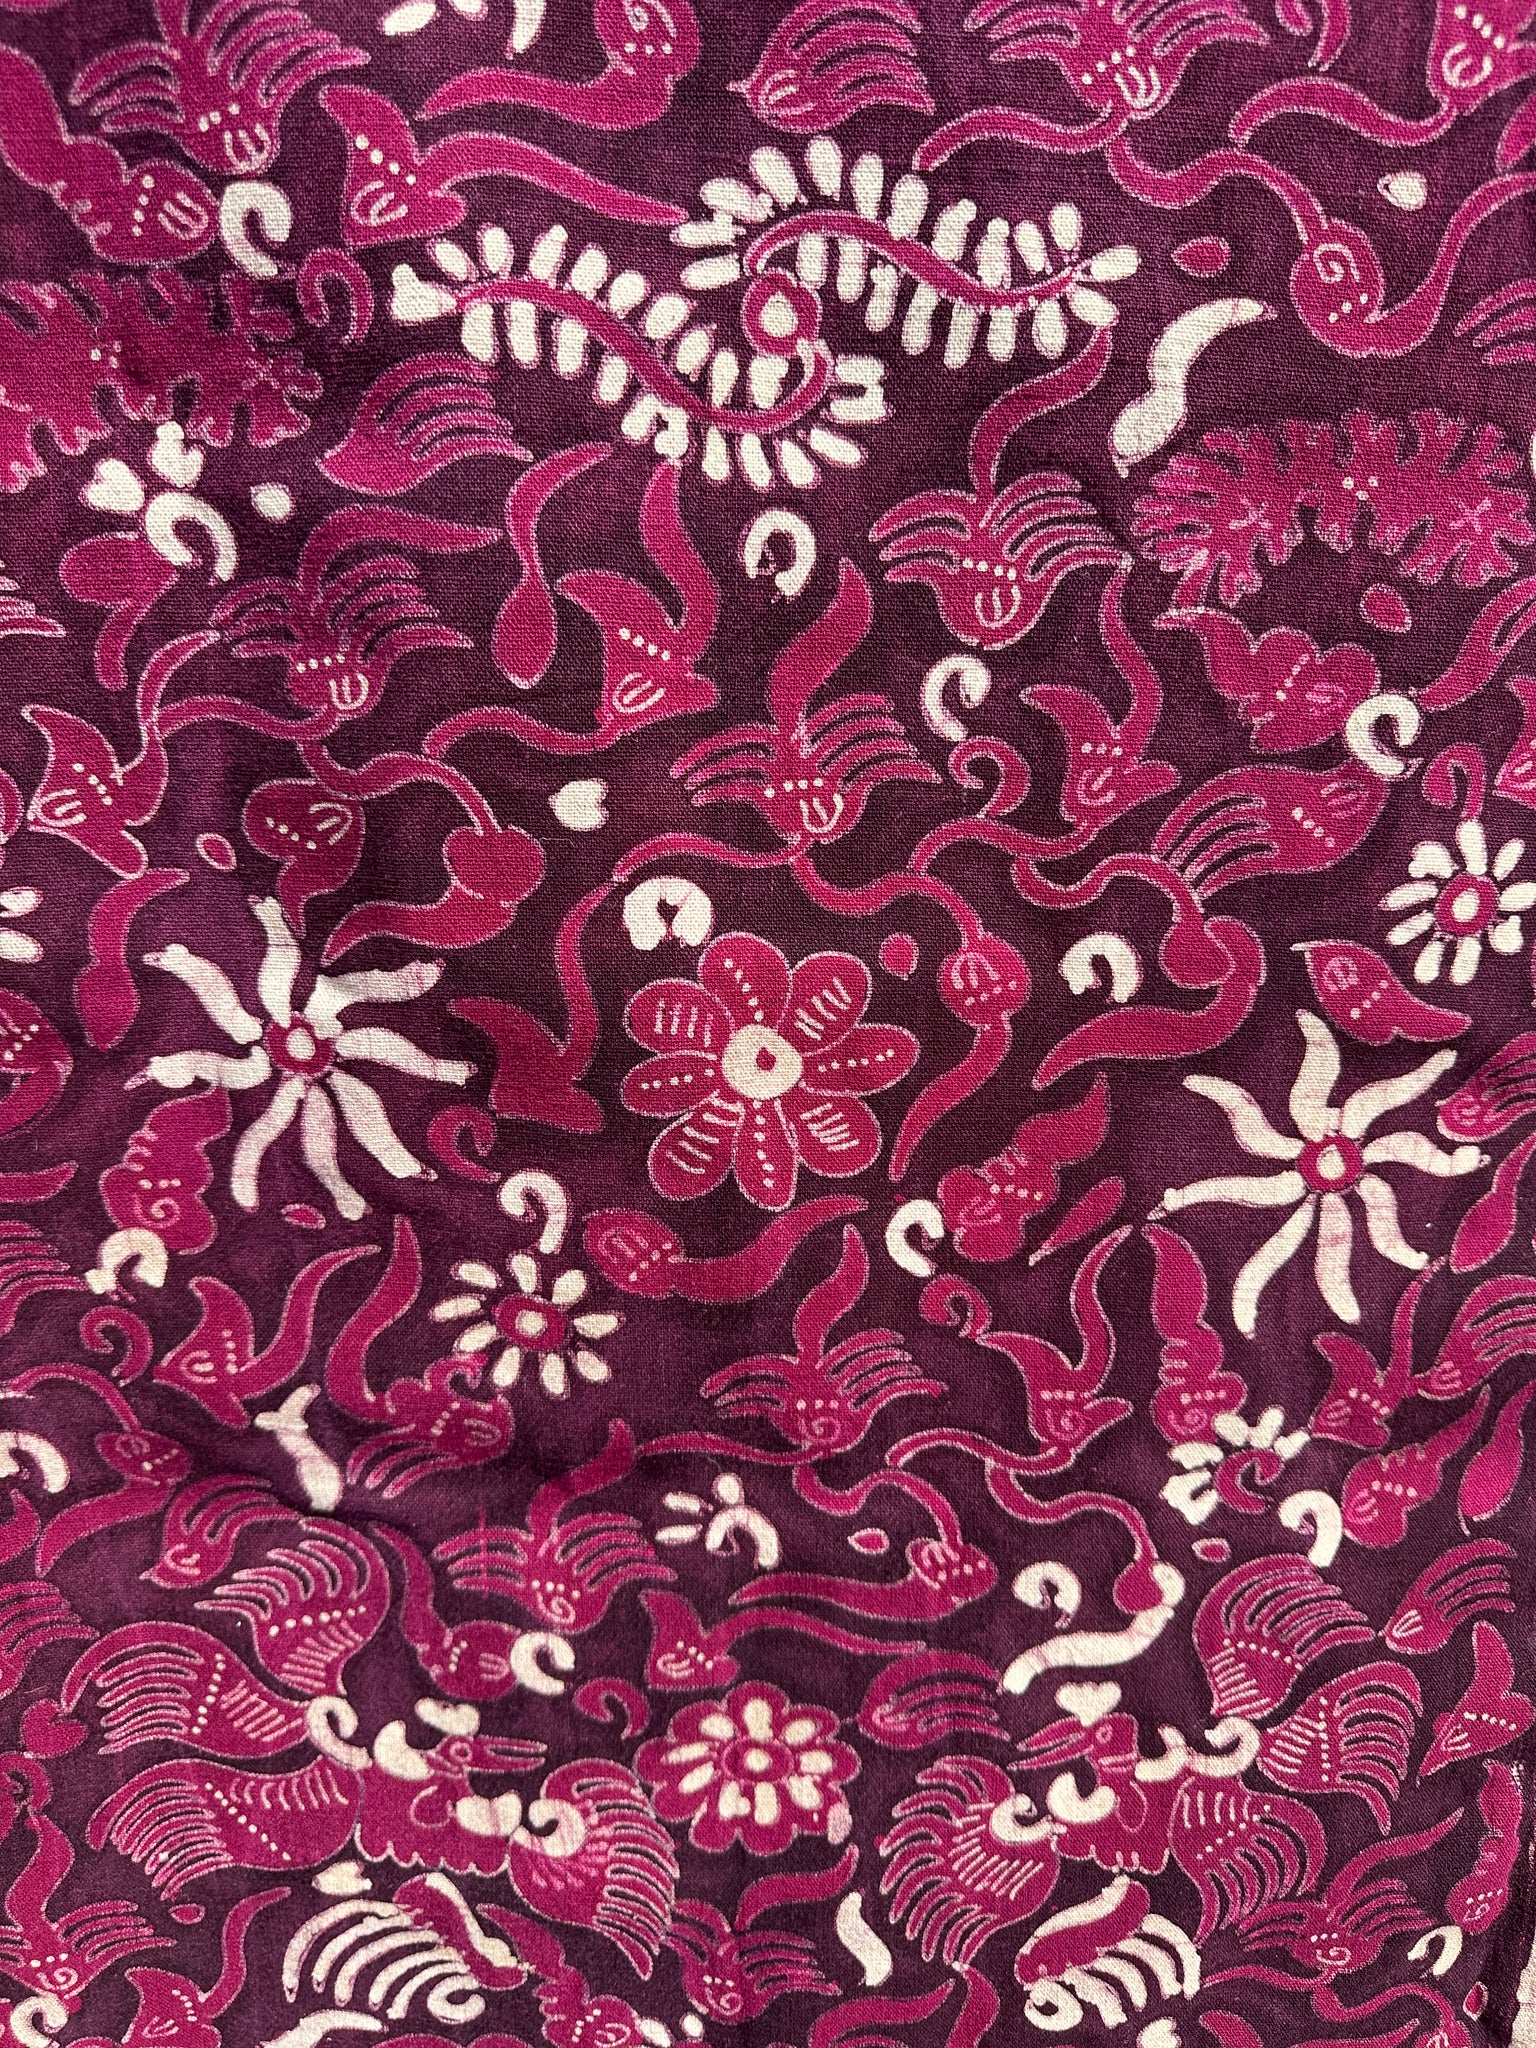 Batik imprimé fuchsia foncé, tissu cérémoniel indonésien 185x50